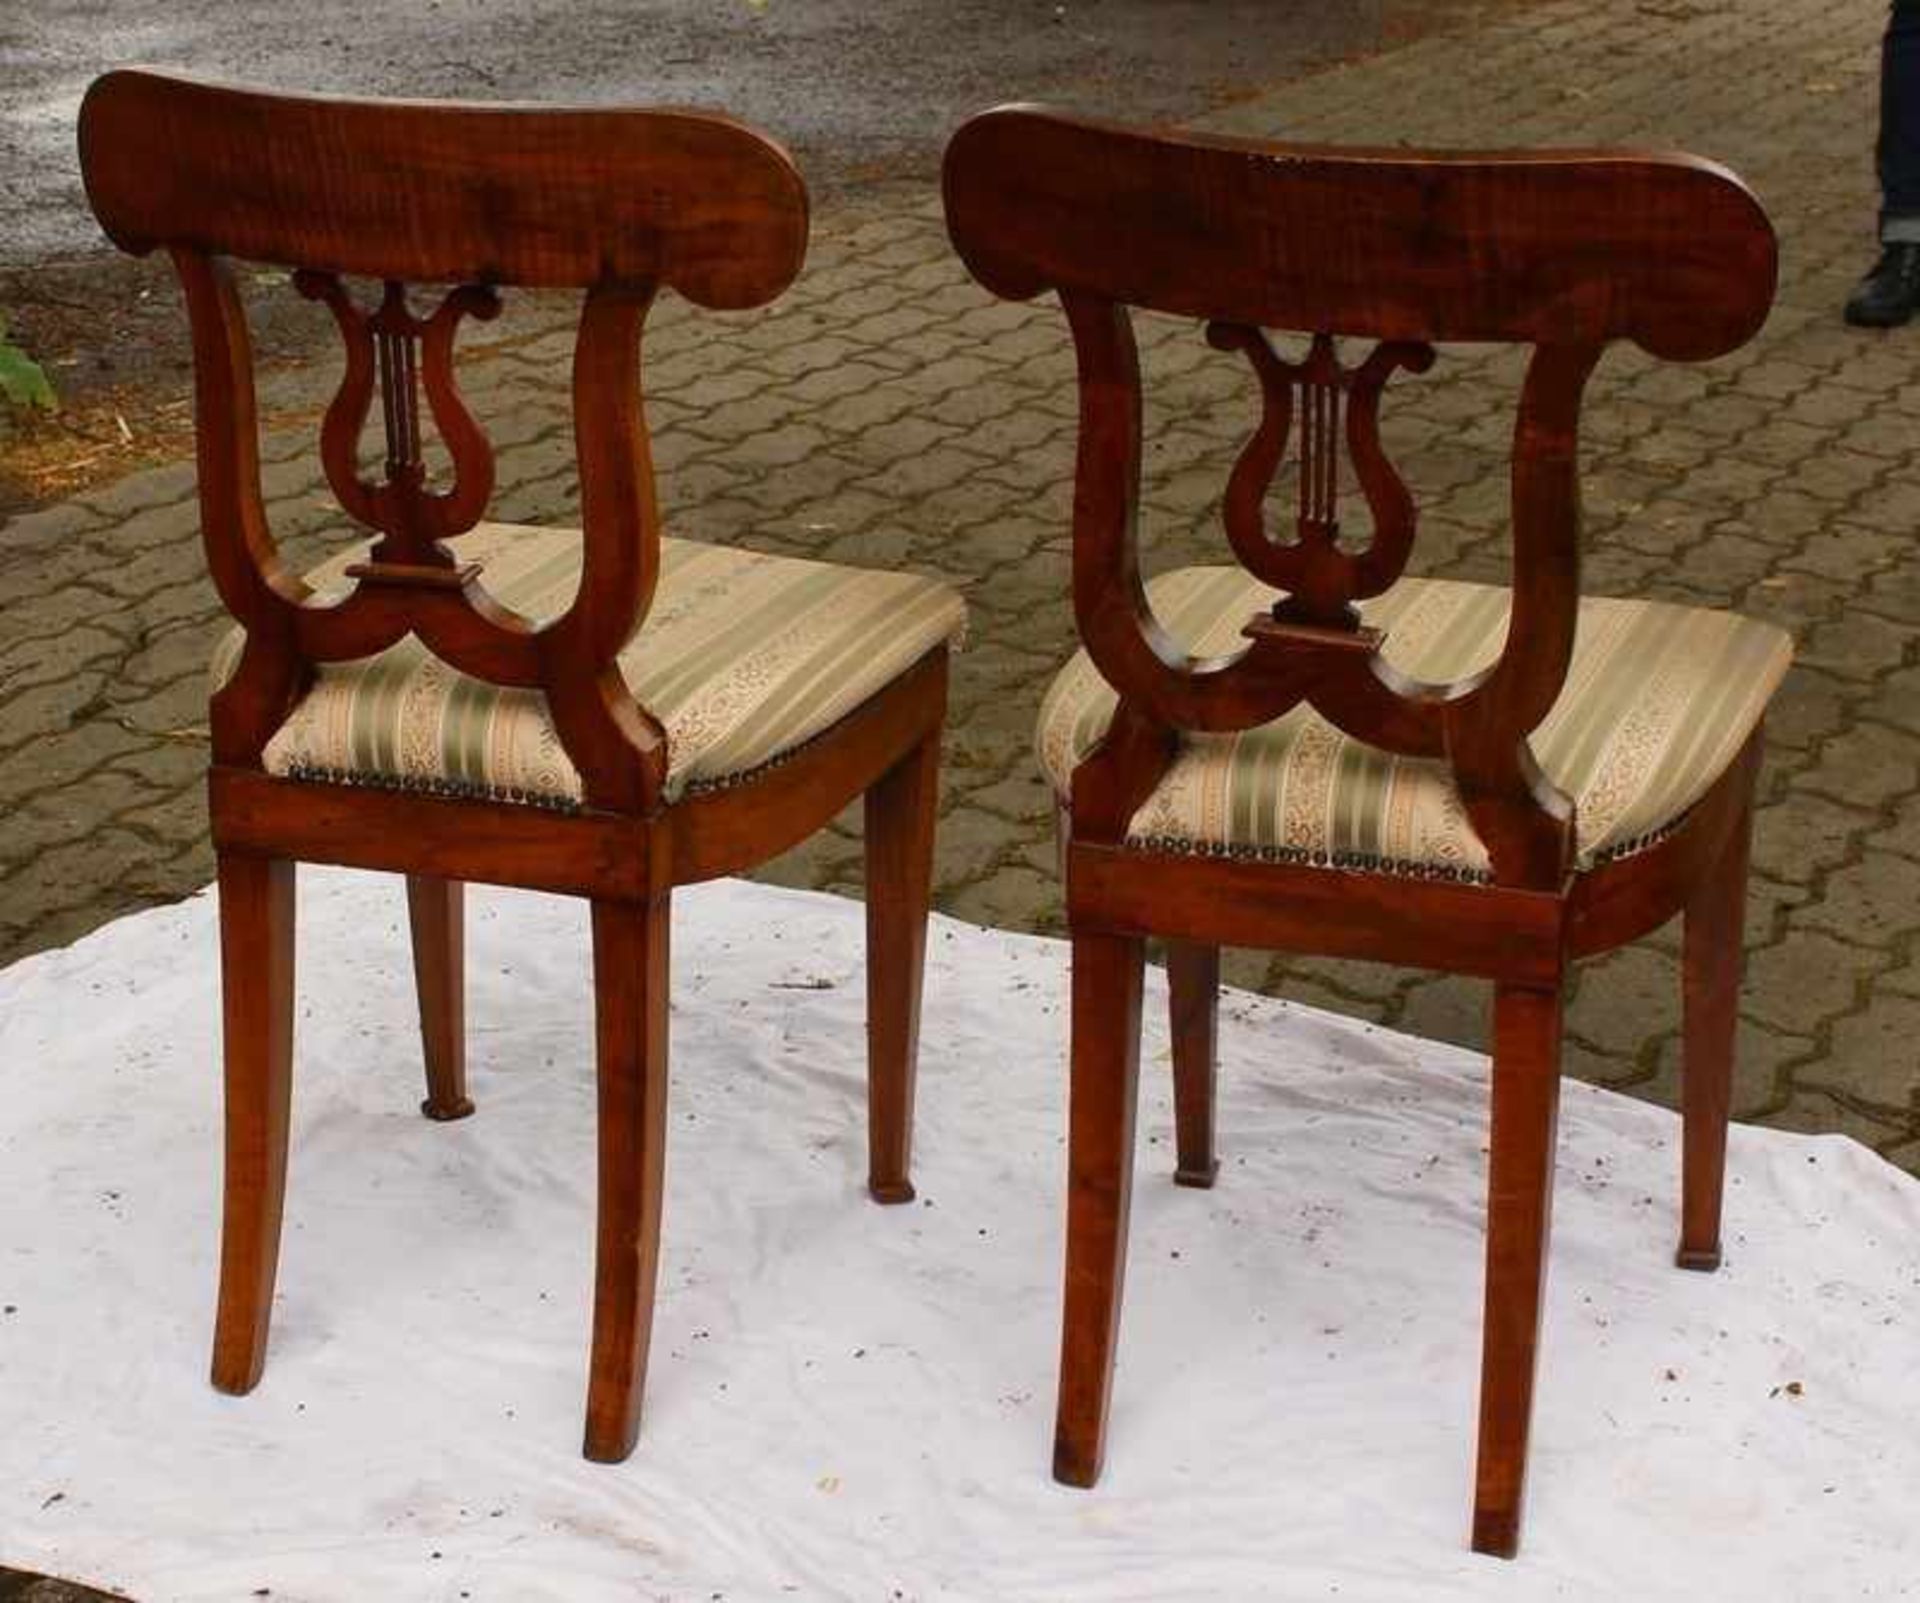 Biedermeier - Paar Stühle um 1820, Schaufelstühle, süddeutsch, Nussbaum, massiv u. furniert, vs. - Bild 2 aus 3